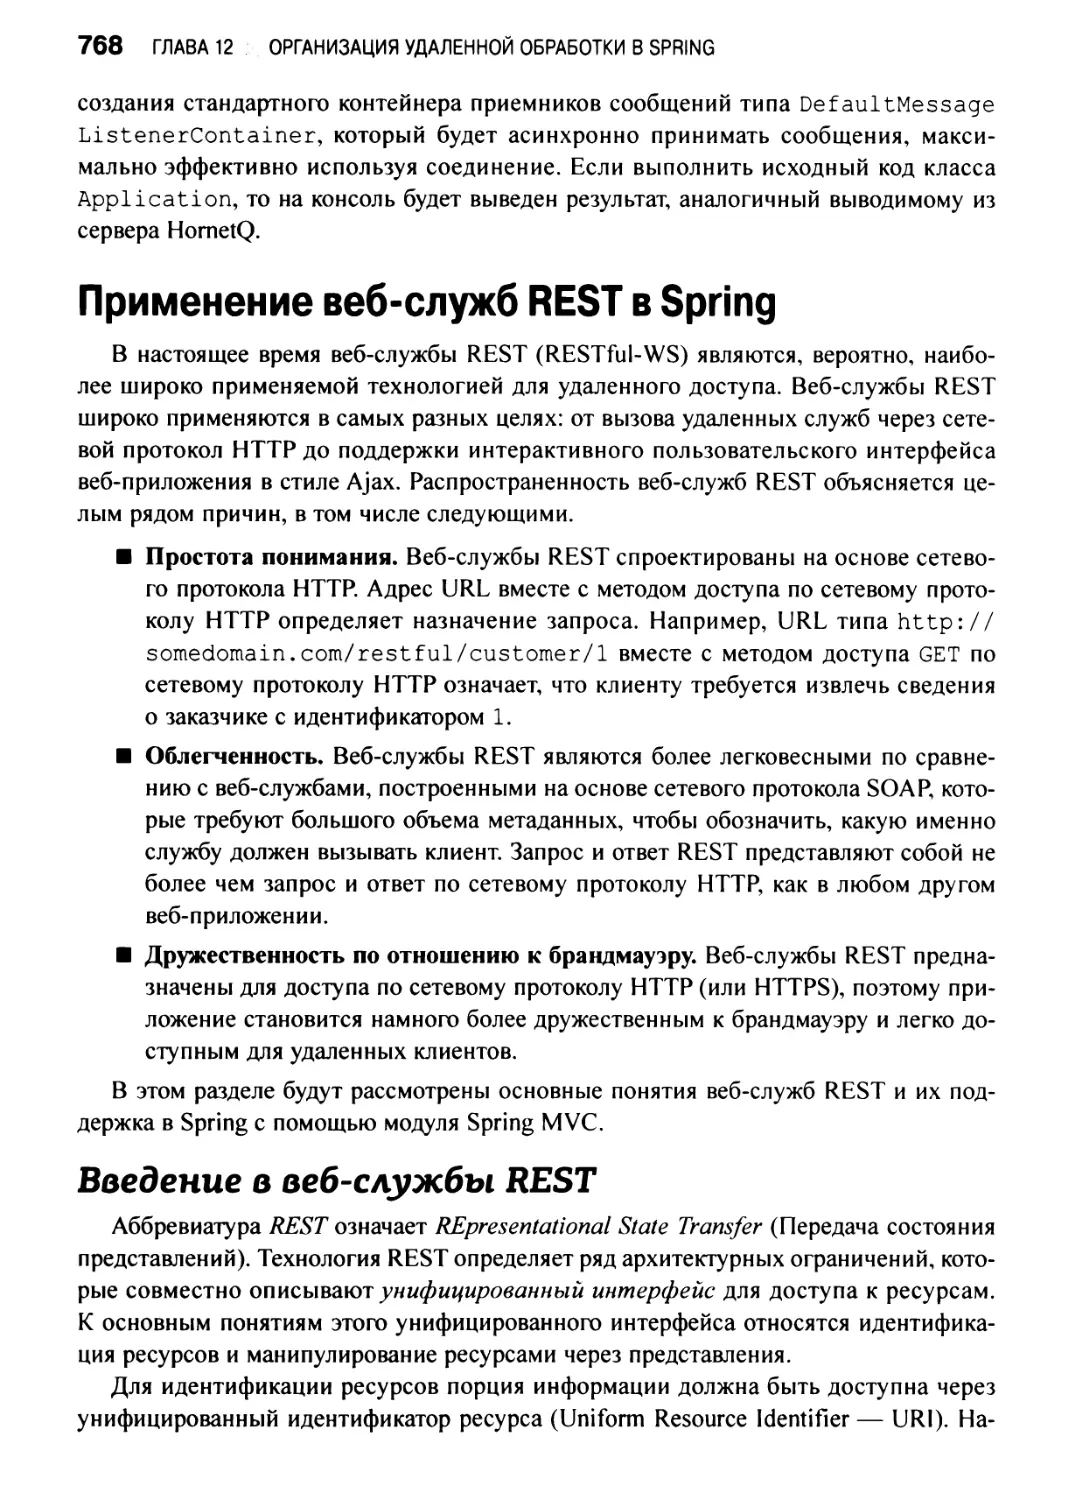 Применение веб-служб REST в Spring